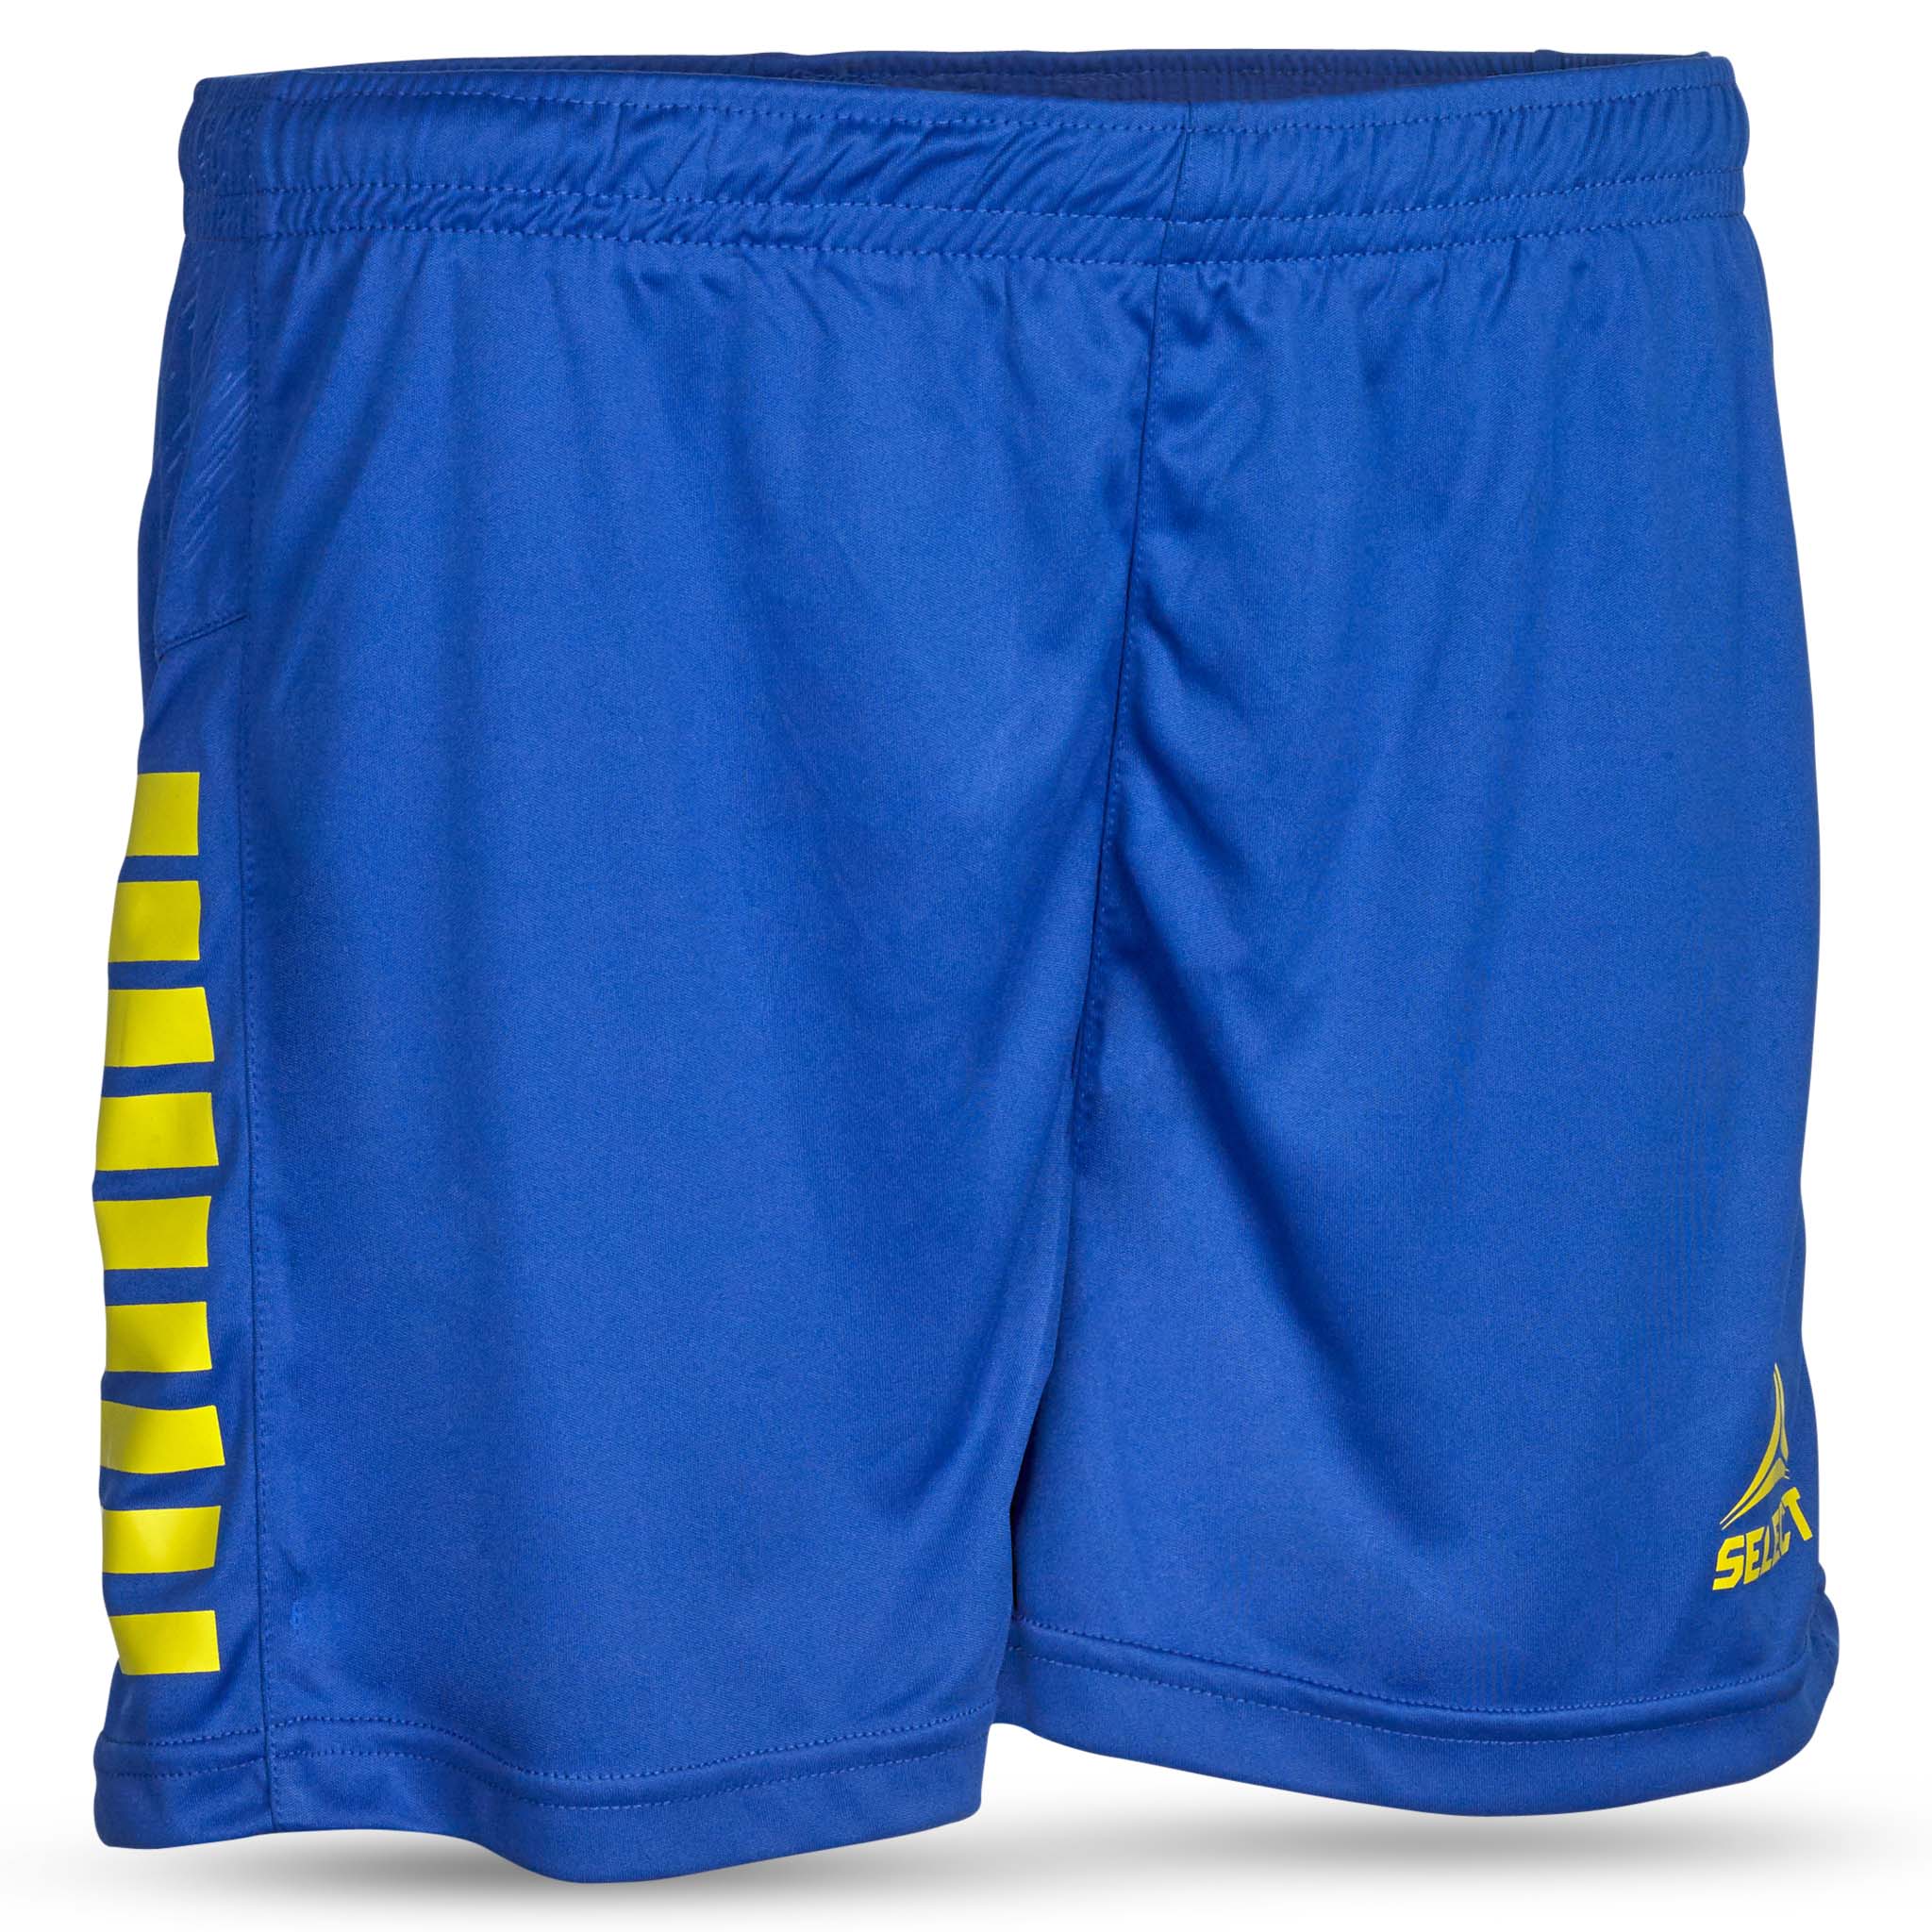 Spain Shorts - kvinnor #färg_blå/gul